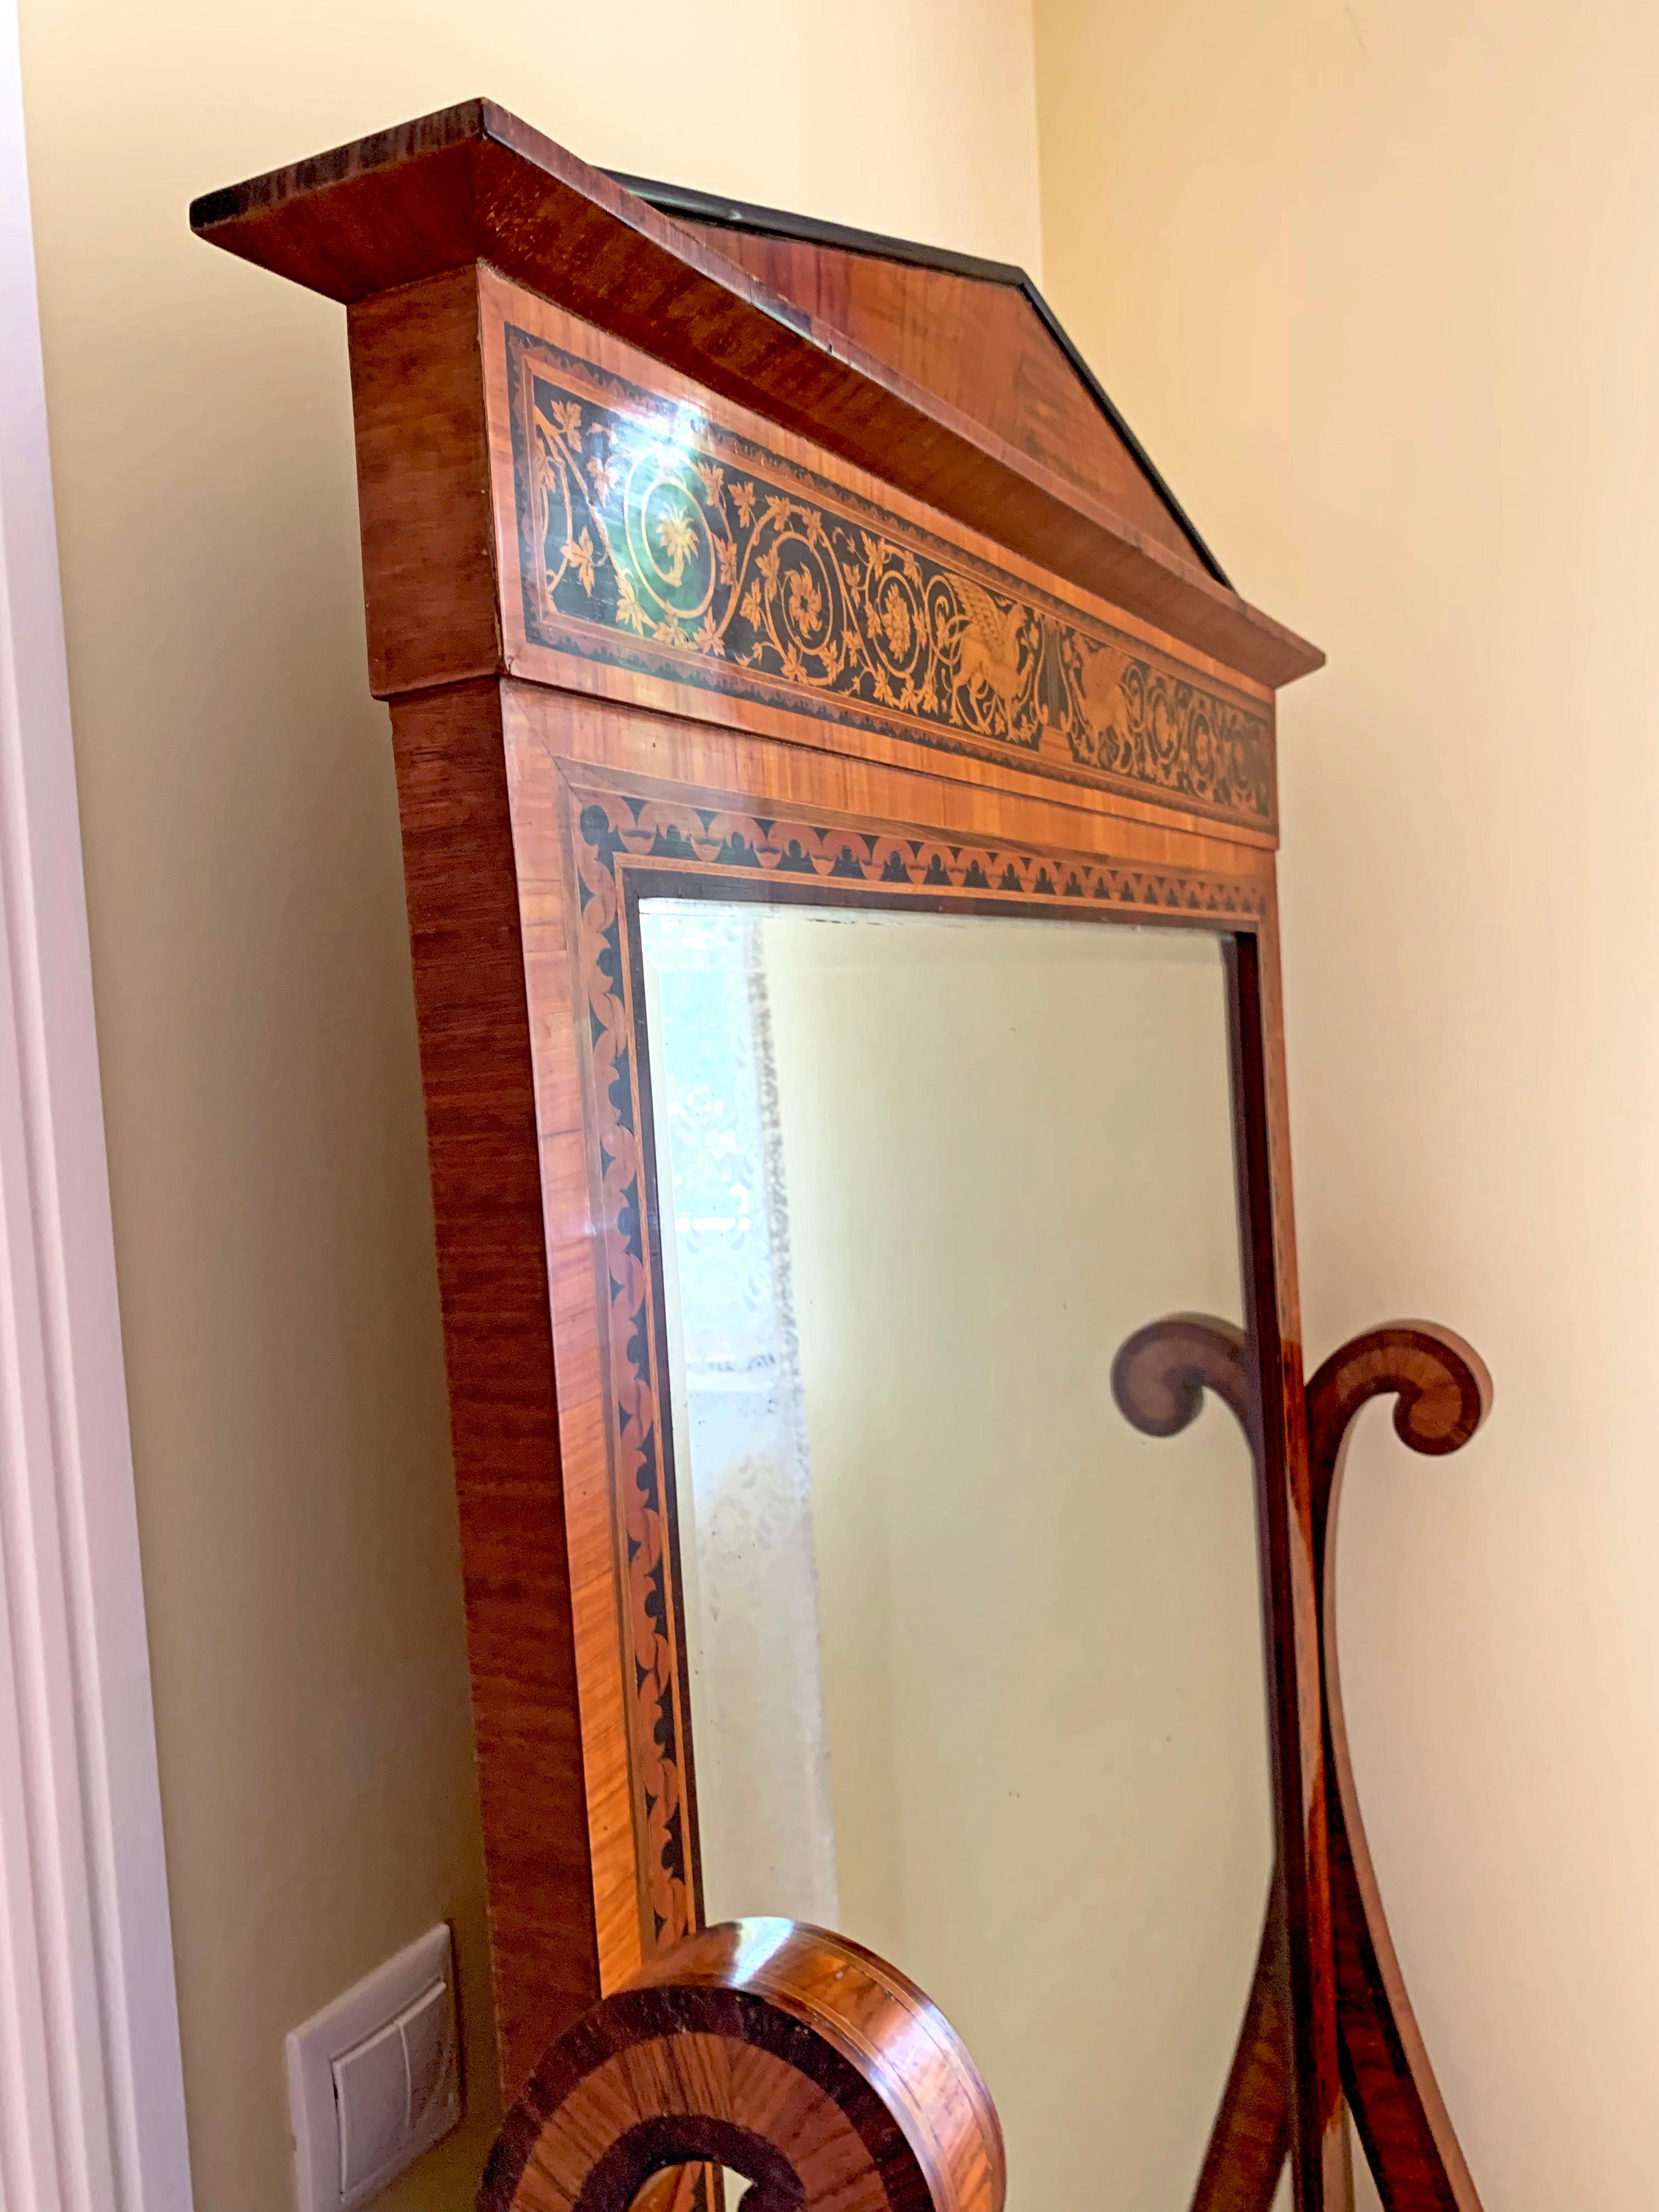 Schöner Standspiegel aus Palisanderholz aus dem späten 19. Jahrhundert mit Intarsien in schwarzem Holz. Der Winkel des Spiegels ist veränderbar und an der Seite fixierbar. Die Details der Einlegearbeiten zeugen von großartigem handwerklichem